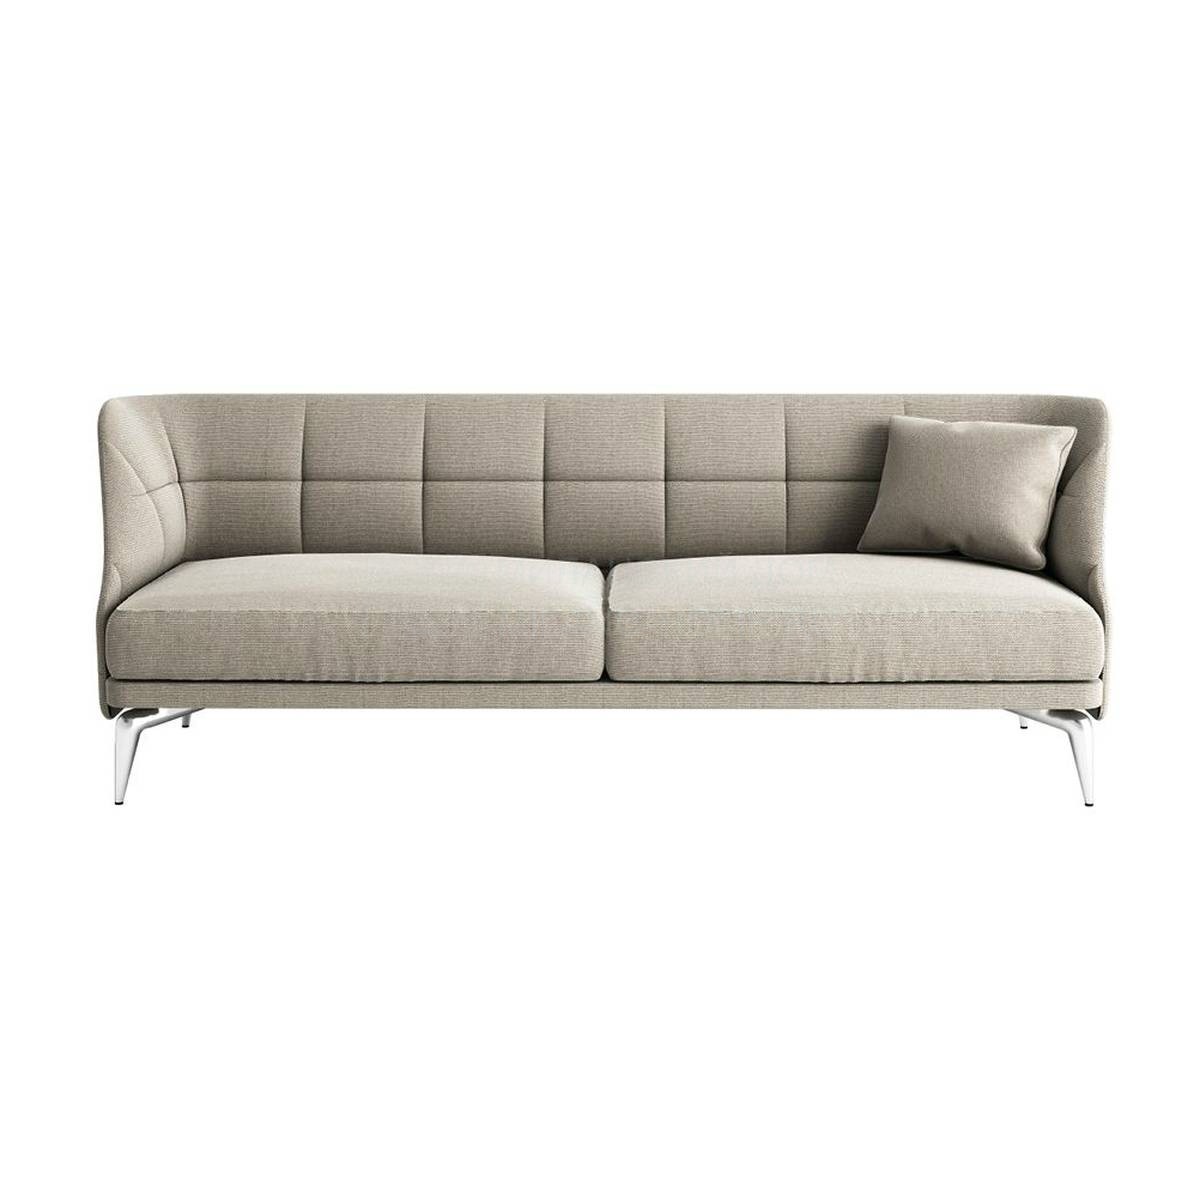 Прямой диван Leeon soft из Италии фабрики DRIADE